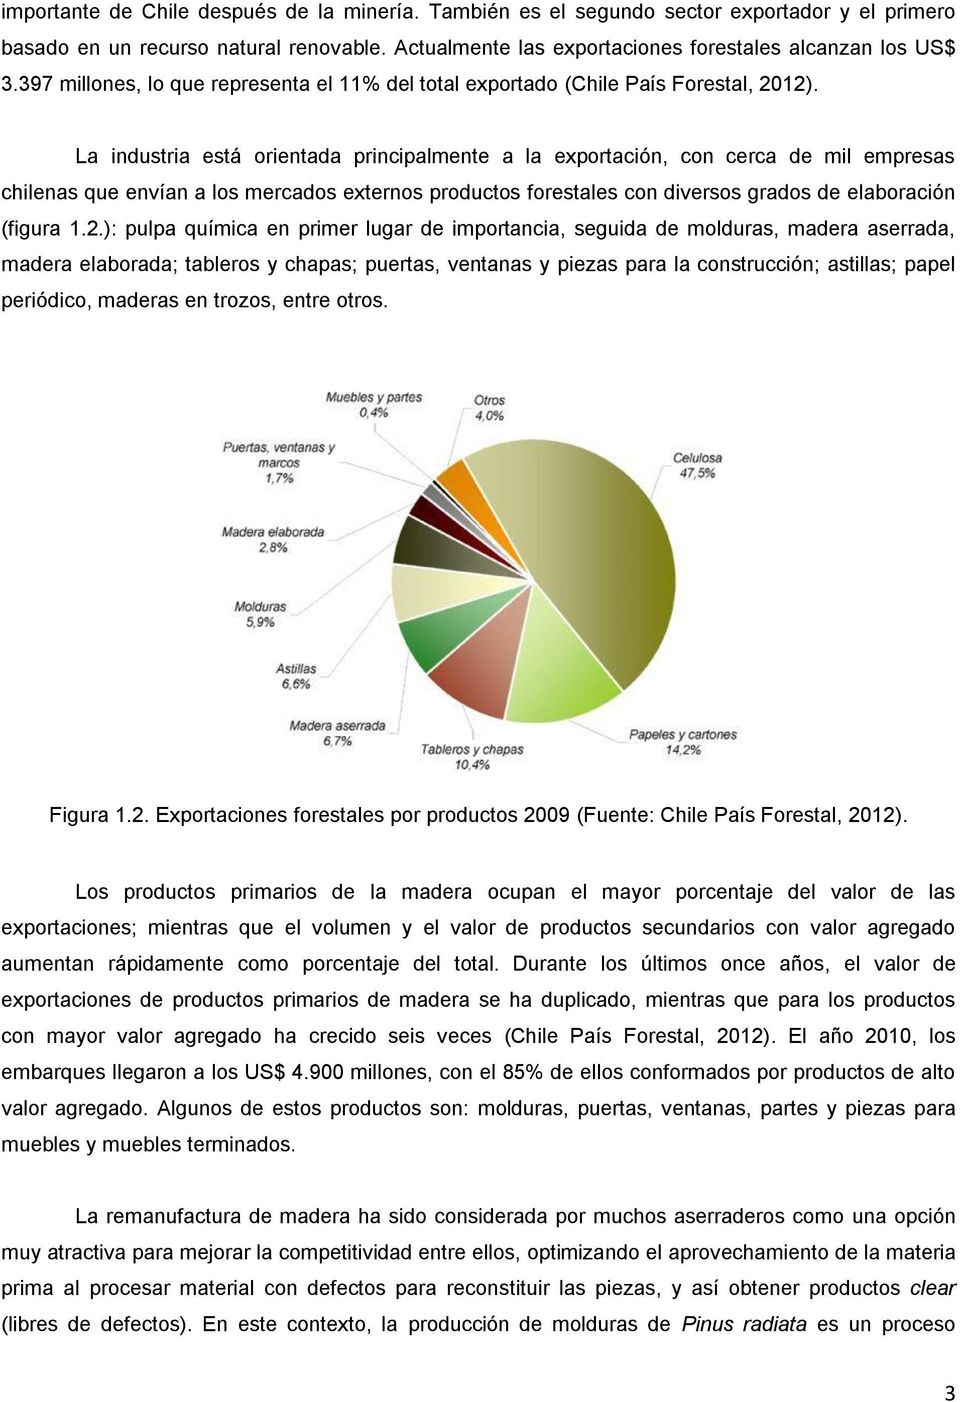 La industria está orientada principalmente a la exportación, con cerca de mil empresas chilenas que envían a los mercados externos productos forestales con diversos grados de elaboración (figura 1.2.